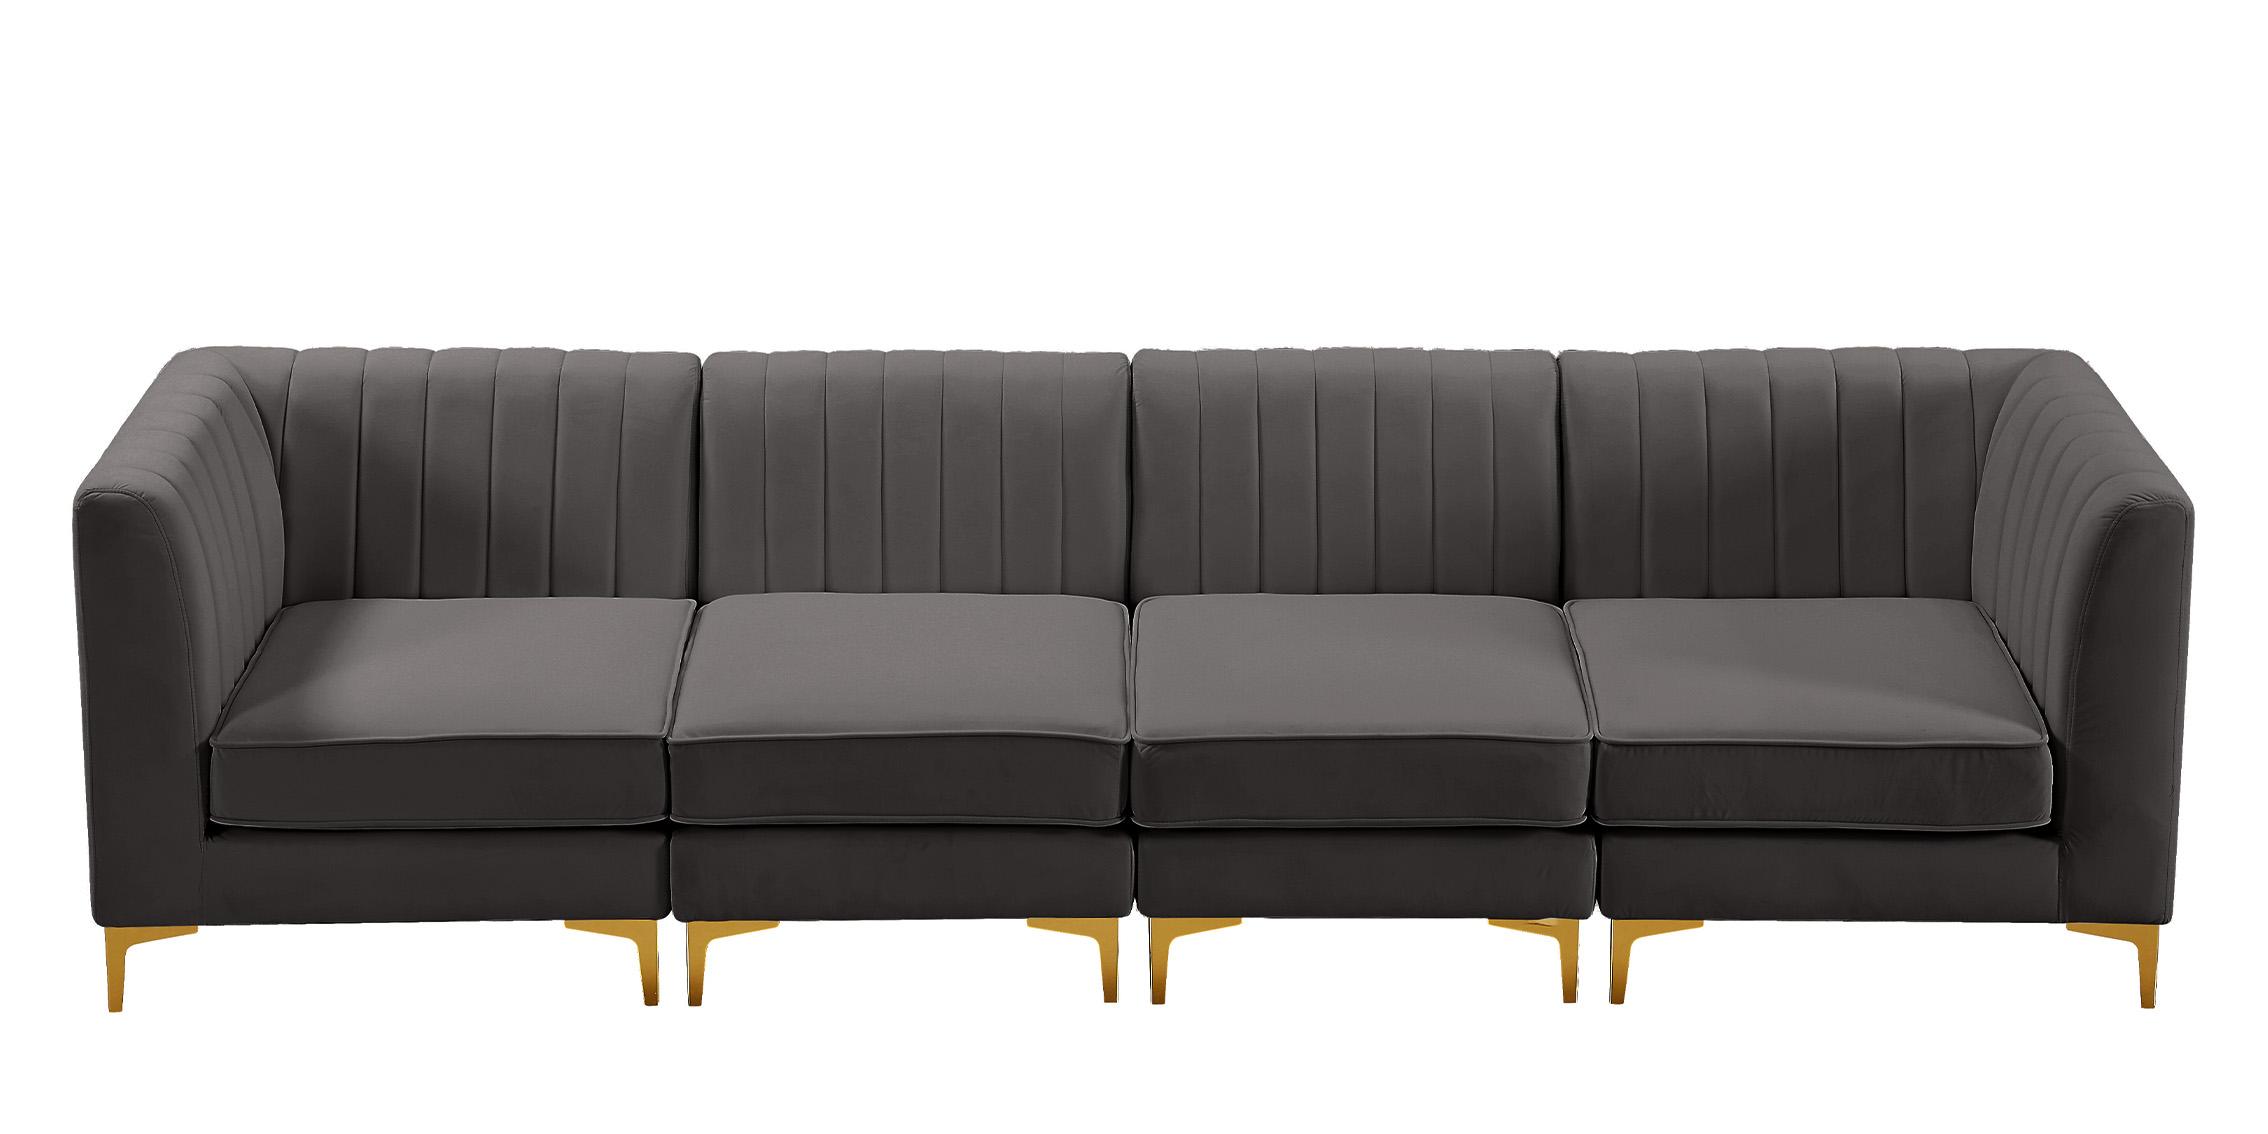 

    
Meridian Furniture ALINA 604Grey-S119 Modular Sectional Sofa Gray 604Grey-S119
